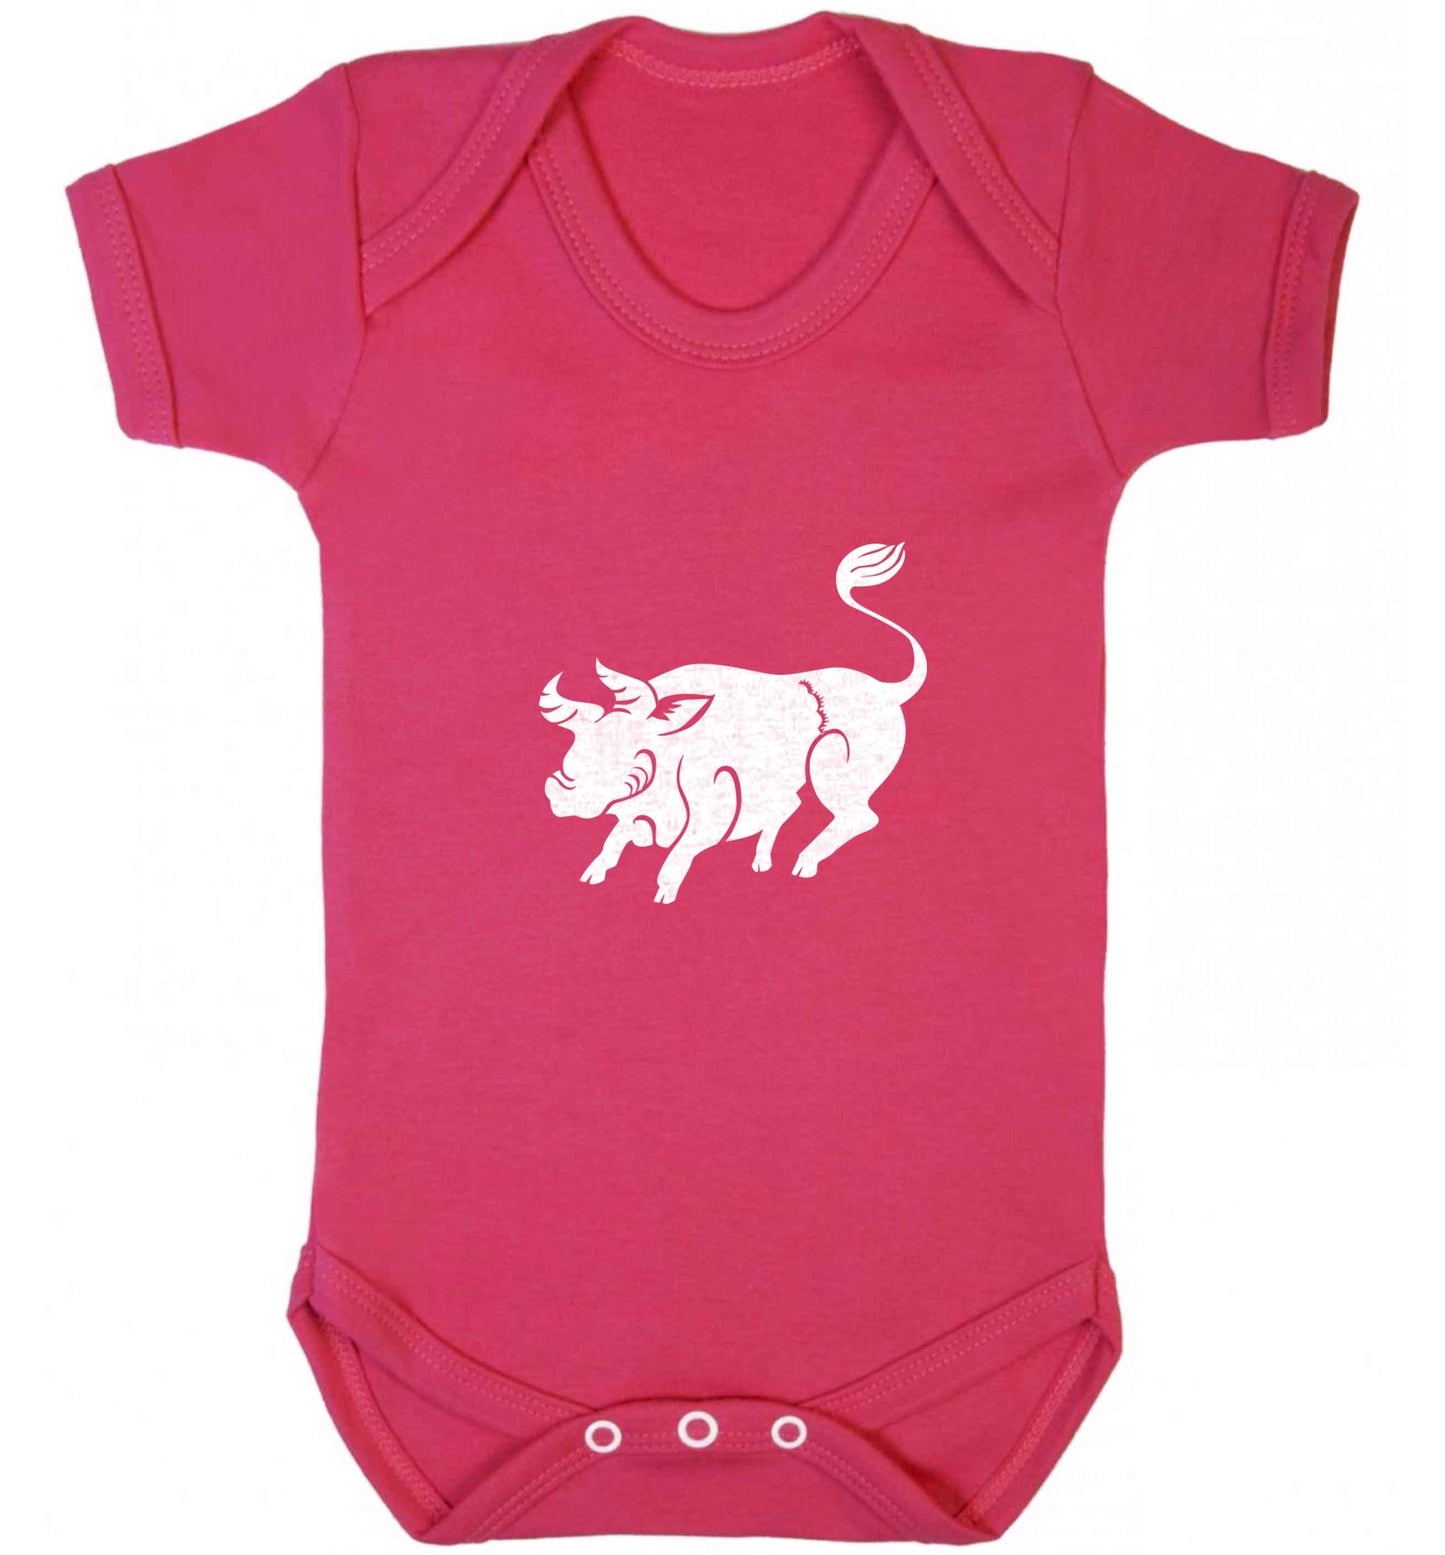 Blue ox baby vest dark pink 18-24 months